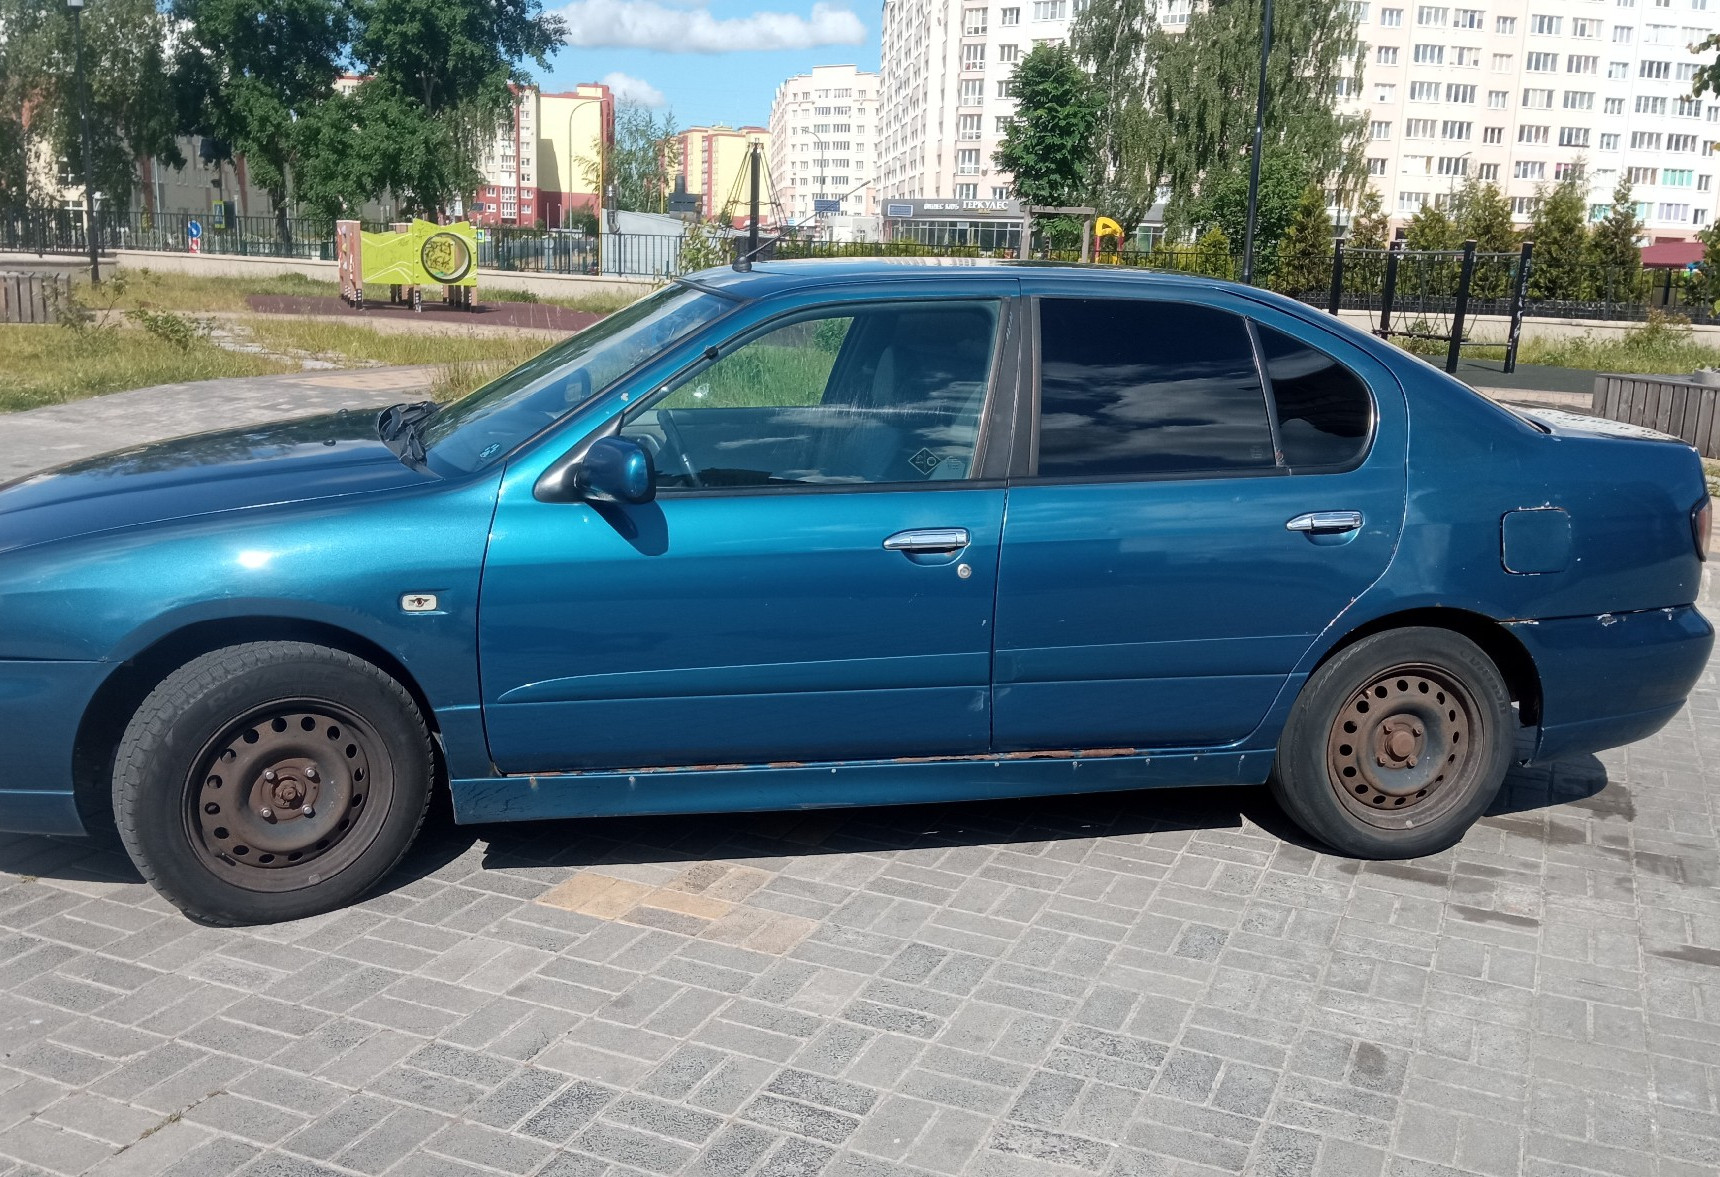 Аренда nissan primera эконом класса 2001 года в городе Москва от 960 руб./сутки, передний привод, двигатель: бензин, объем 1.8 литров, ОСАГО (Мультидрайв), без водителя, недорого, вид 3 - RentRide